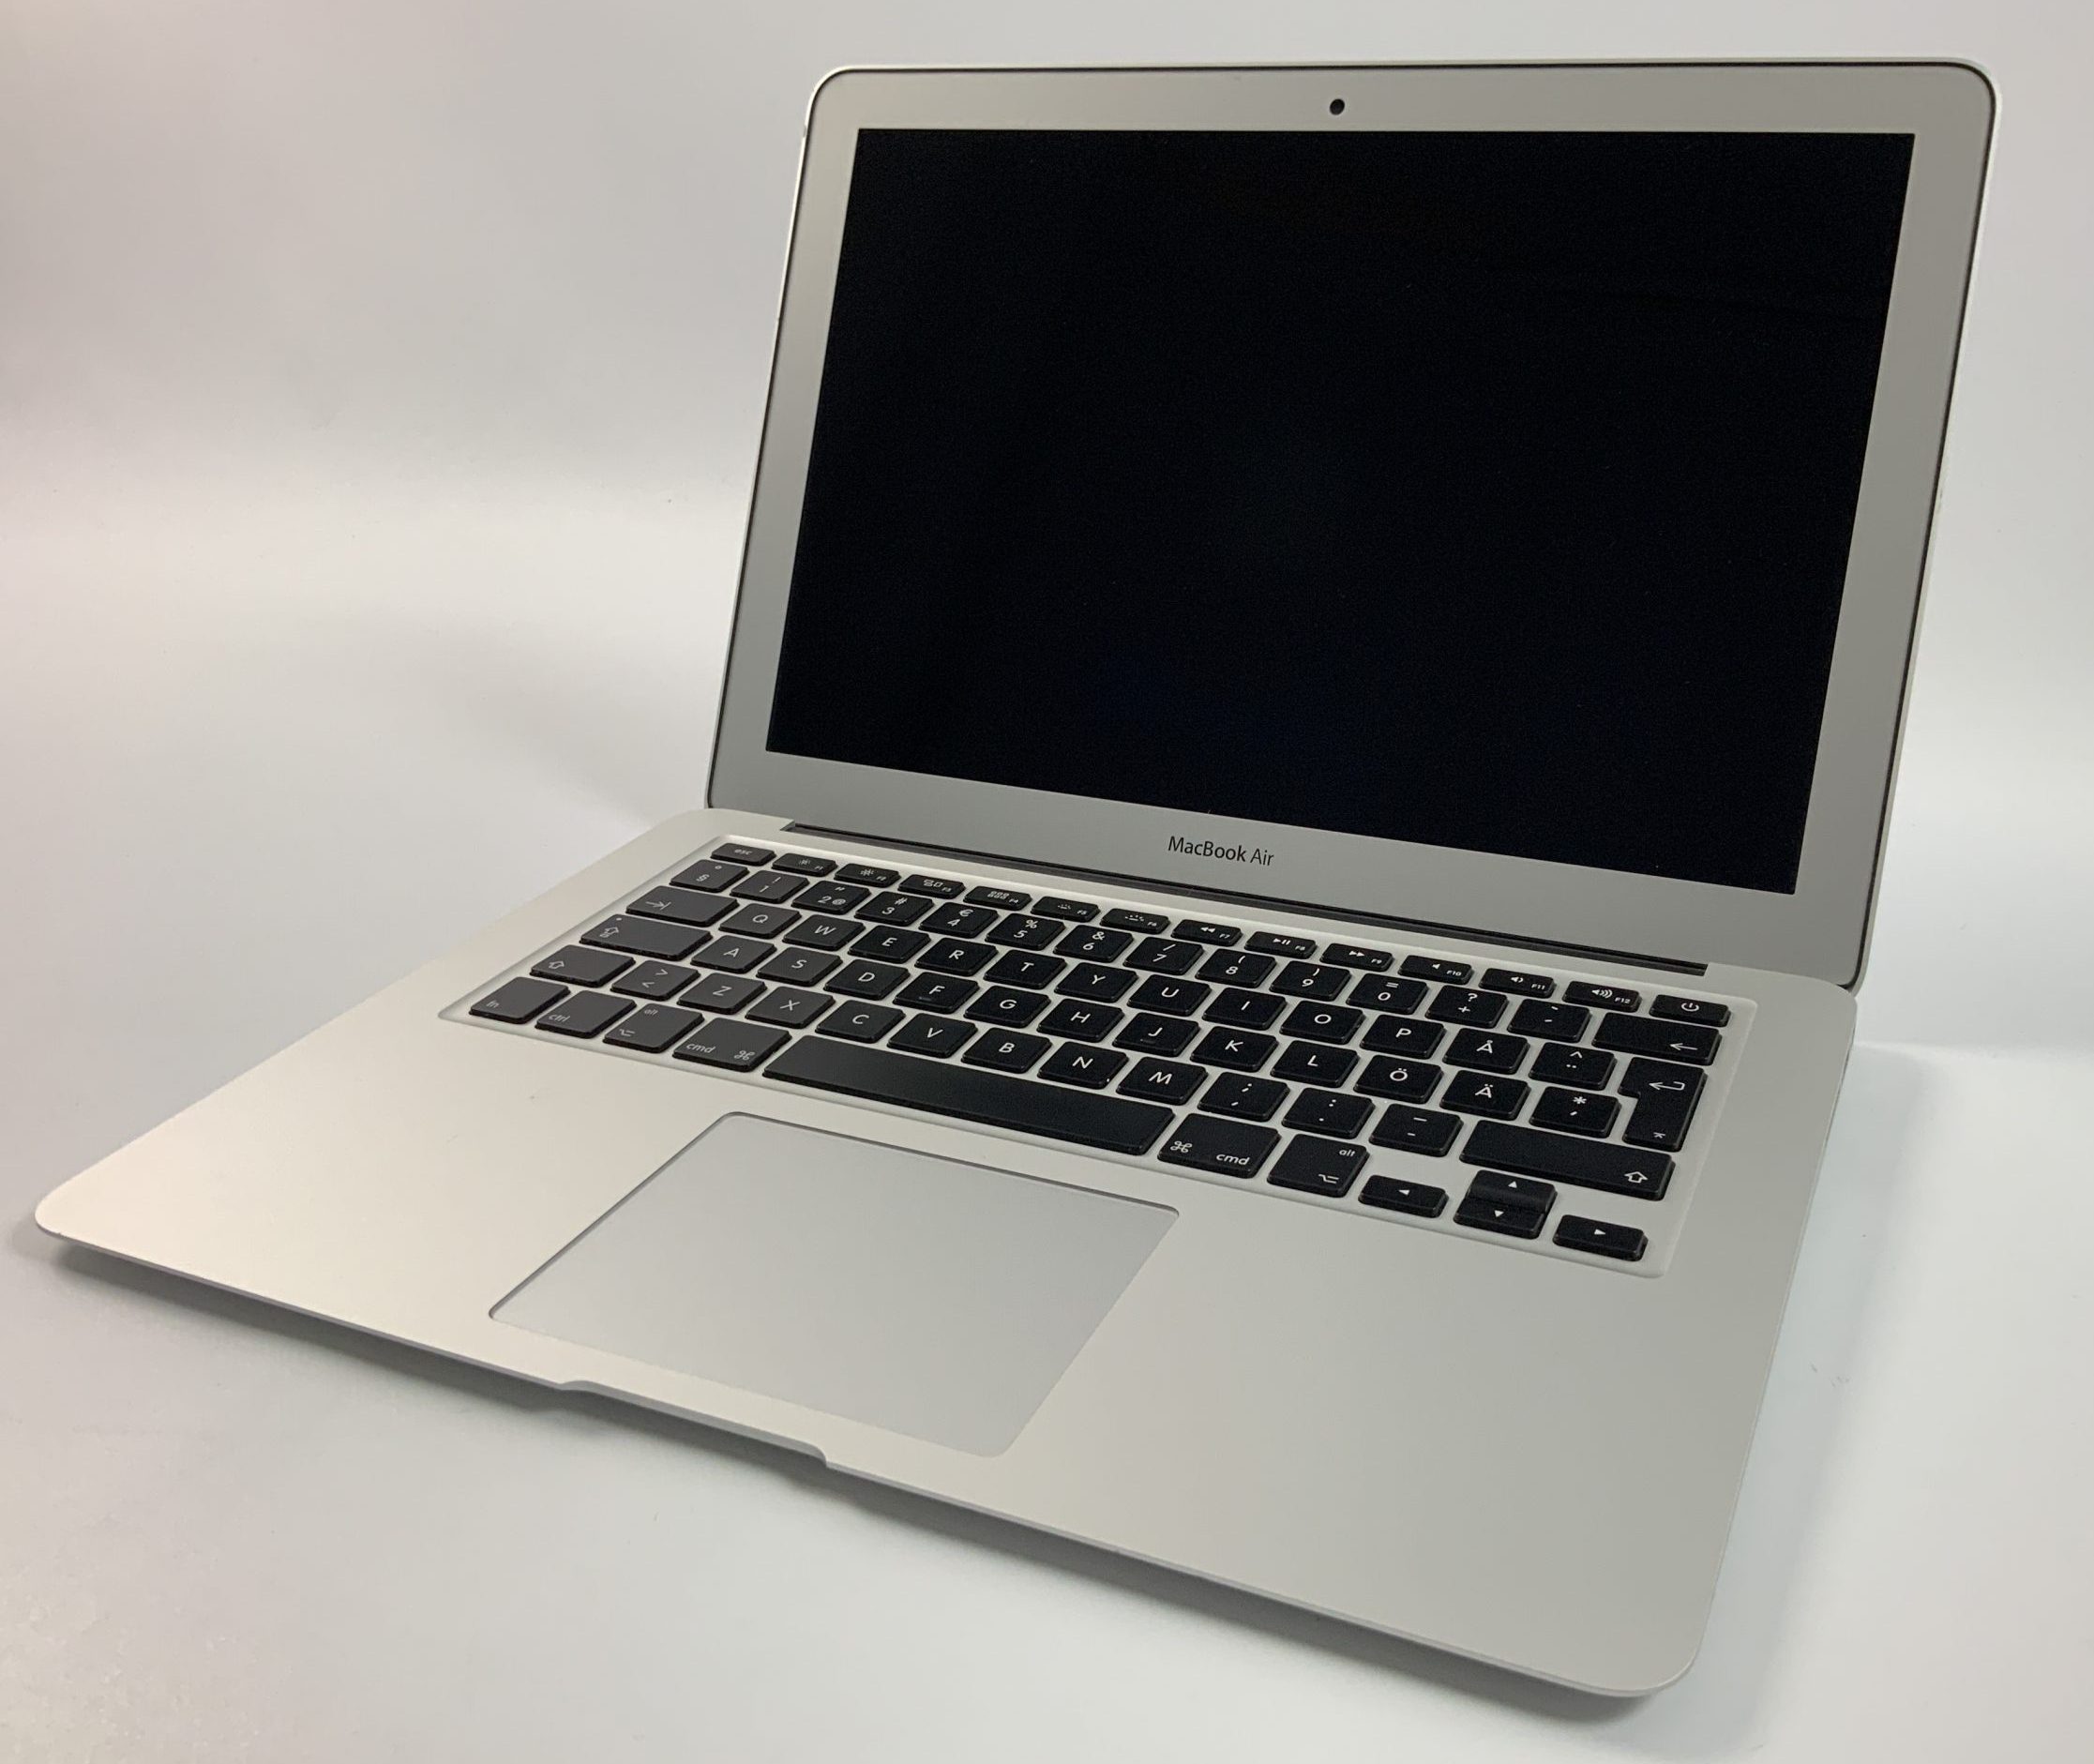 MacBook Air 13" Mid 2017 (Intel Core i5 1.8 GHz 8 GB RAM 256 GB SSD), Intel Core i5 1.8 GHz, 8 GB RAM, 256 GB SSD, Afbeelding 1